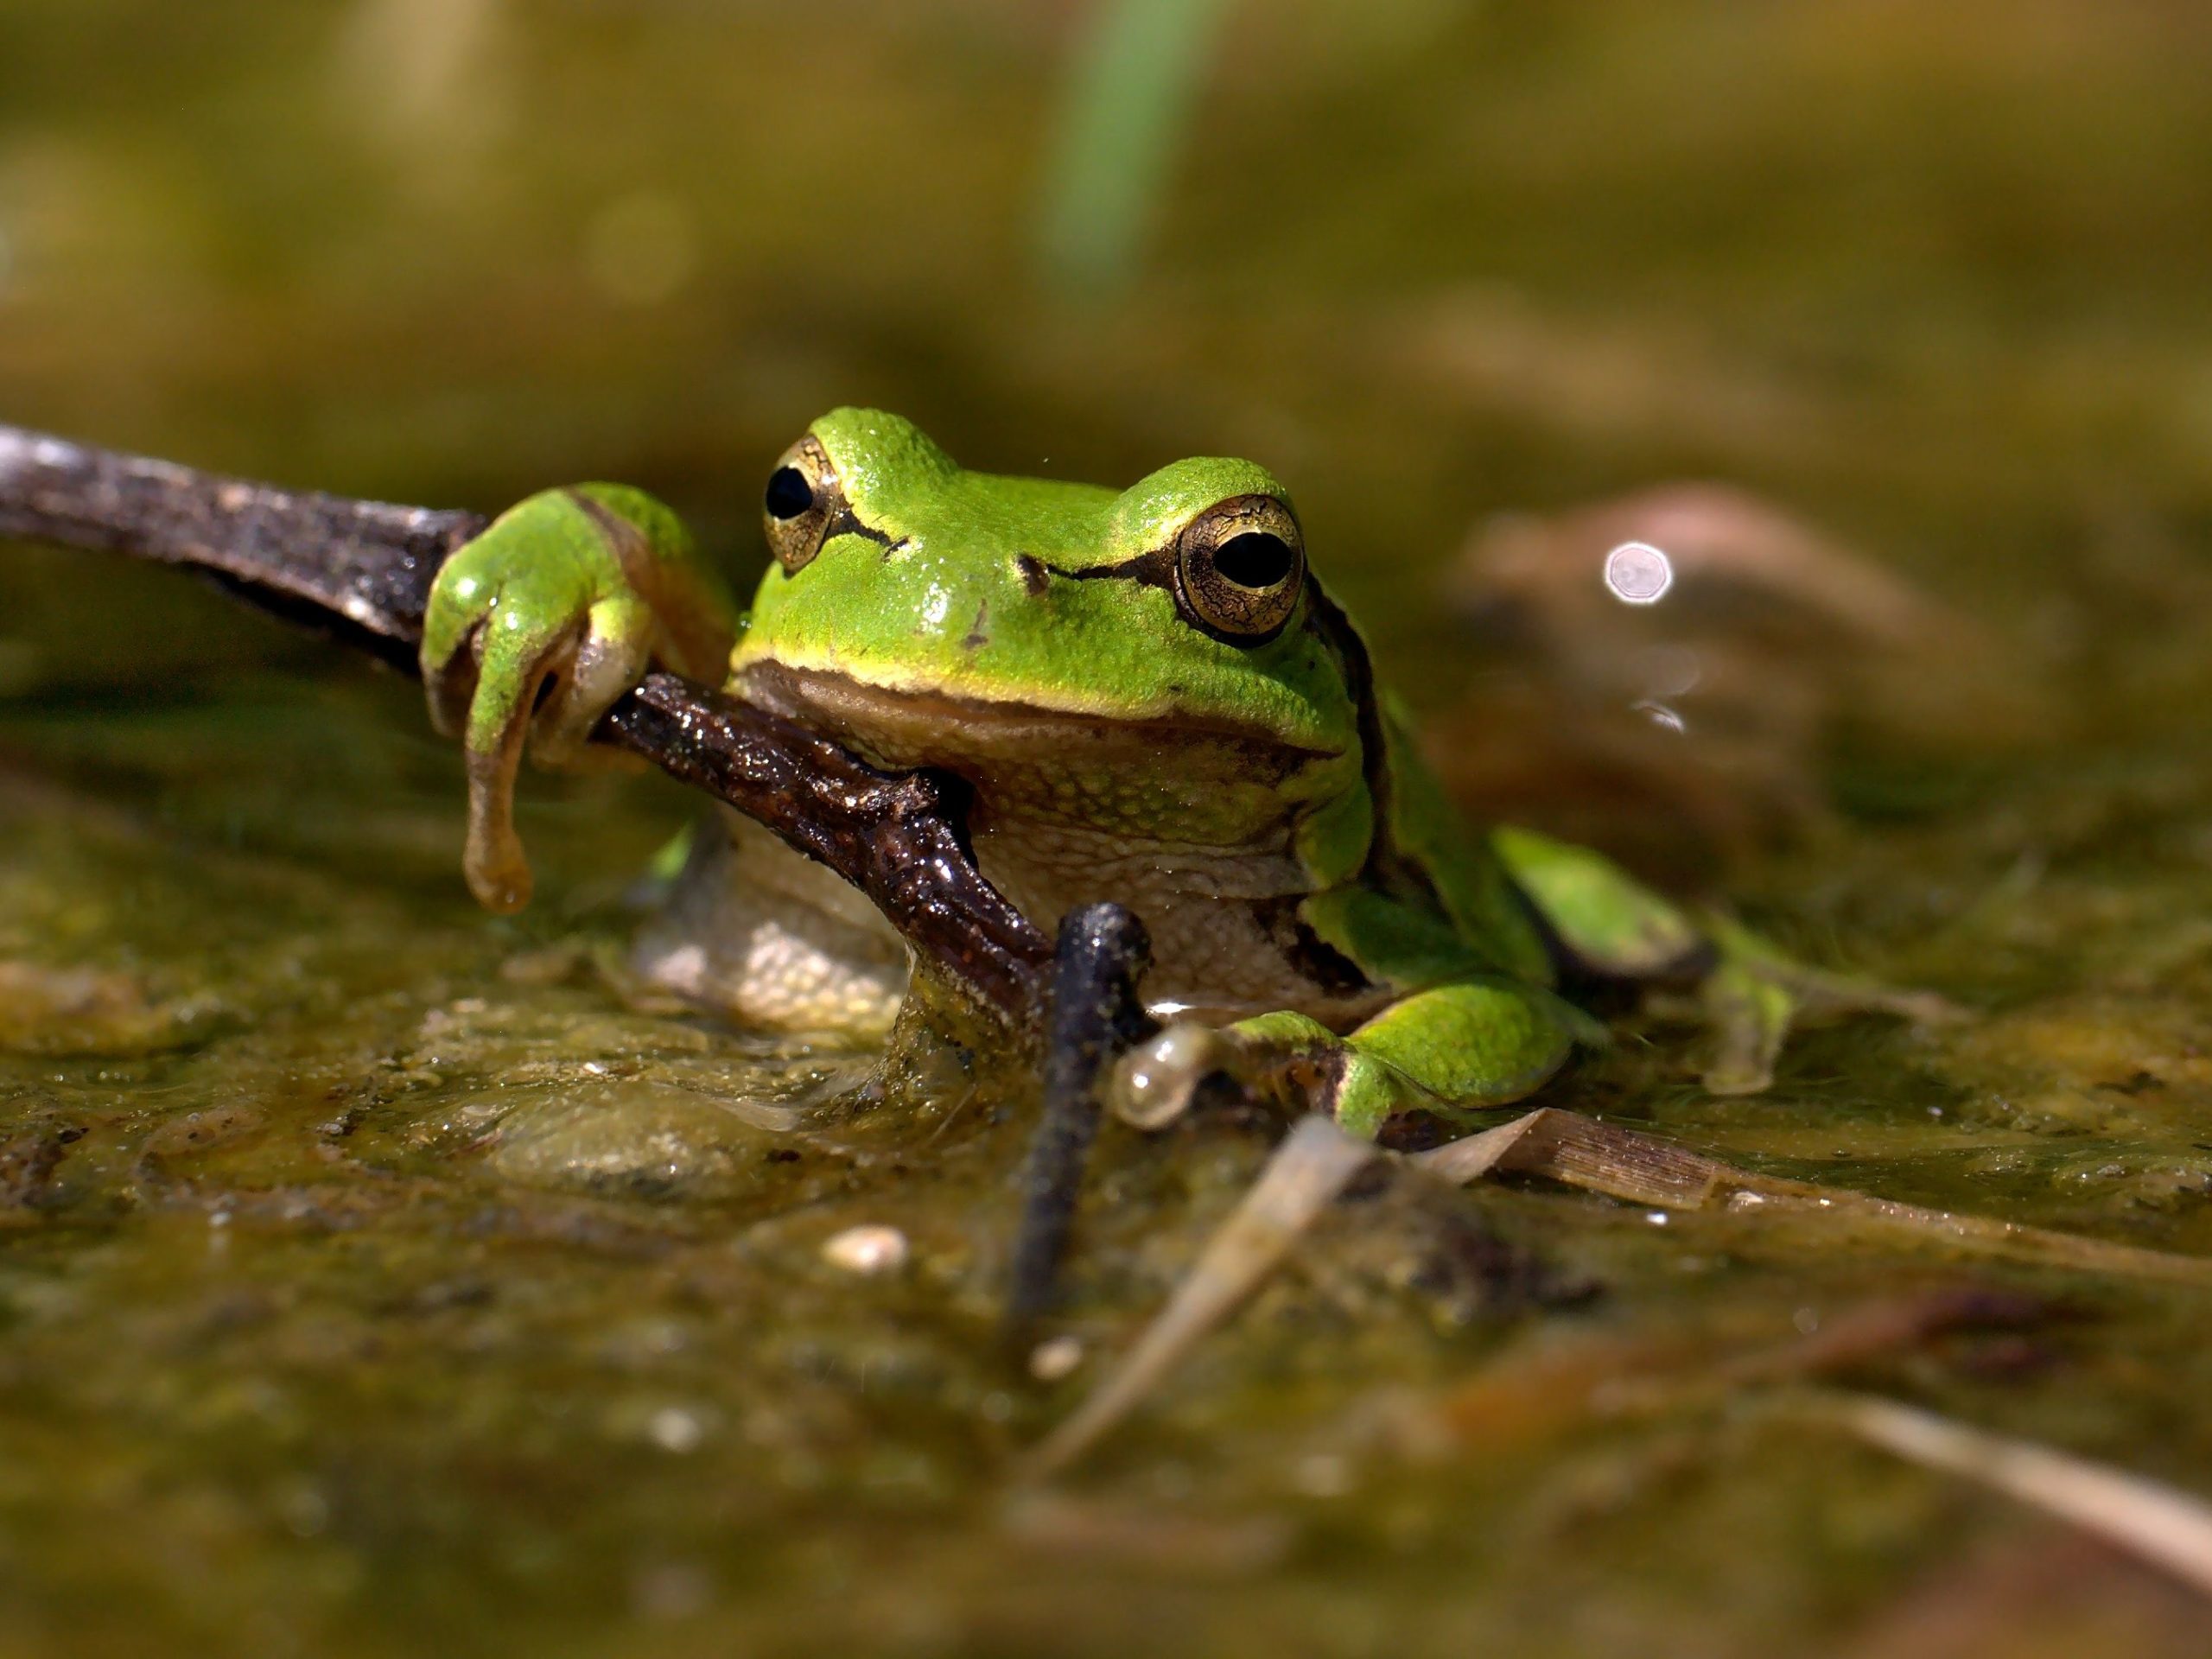 La Rainette verte, espèce vivant dans le Marais poitevin, est une petite grenouille qui se distingue par sa couleur étonnante : vert pomme